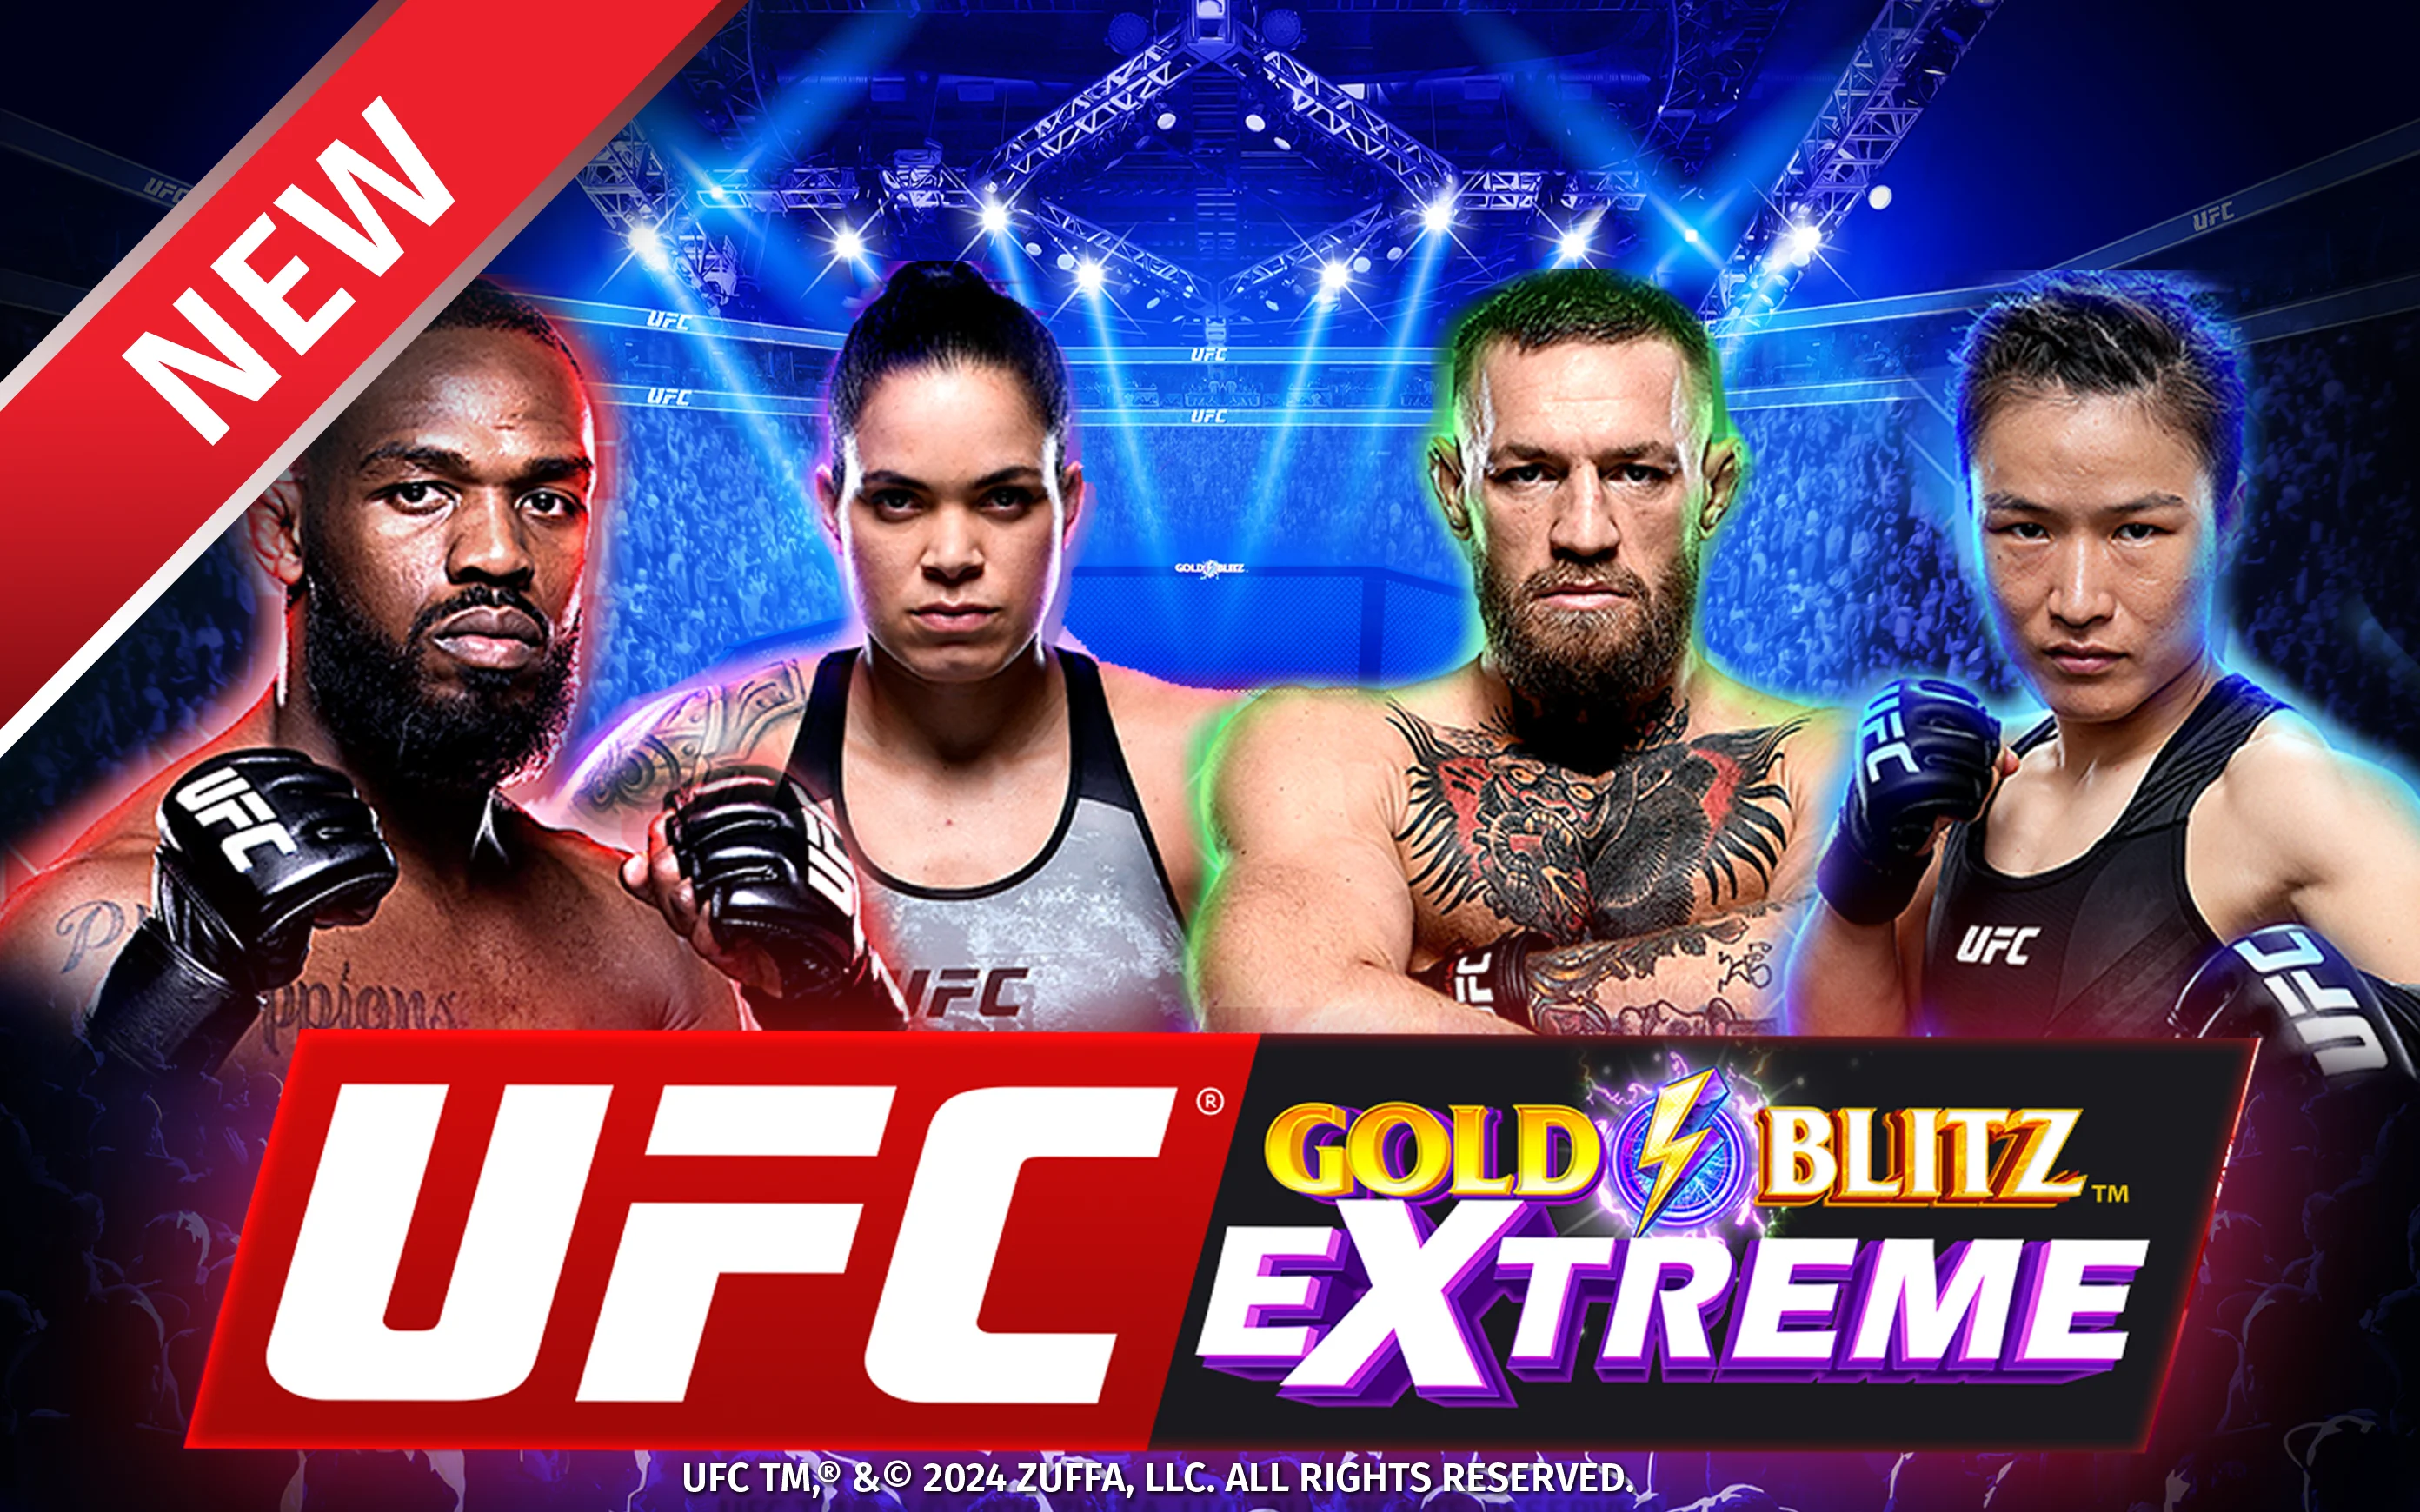 Starcasino.be online casino üzerinden UFC Gold Blitz Extreme™ oynayın